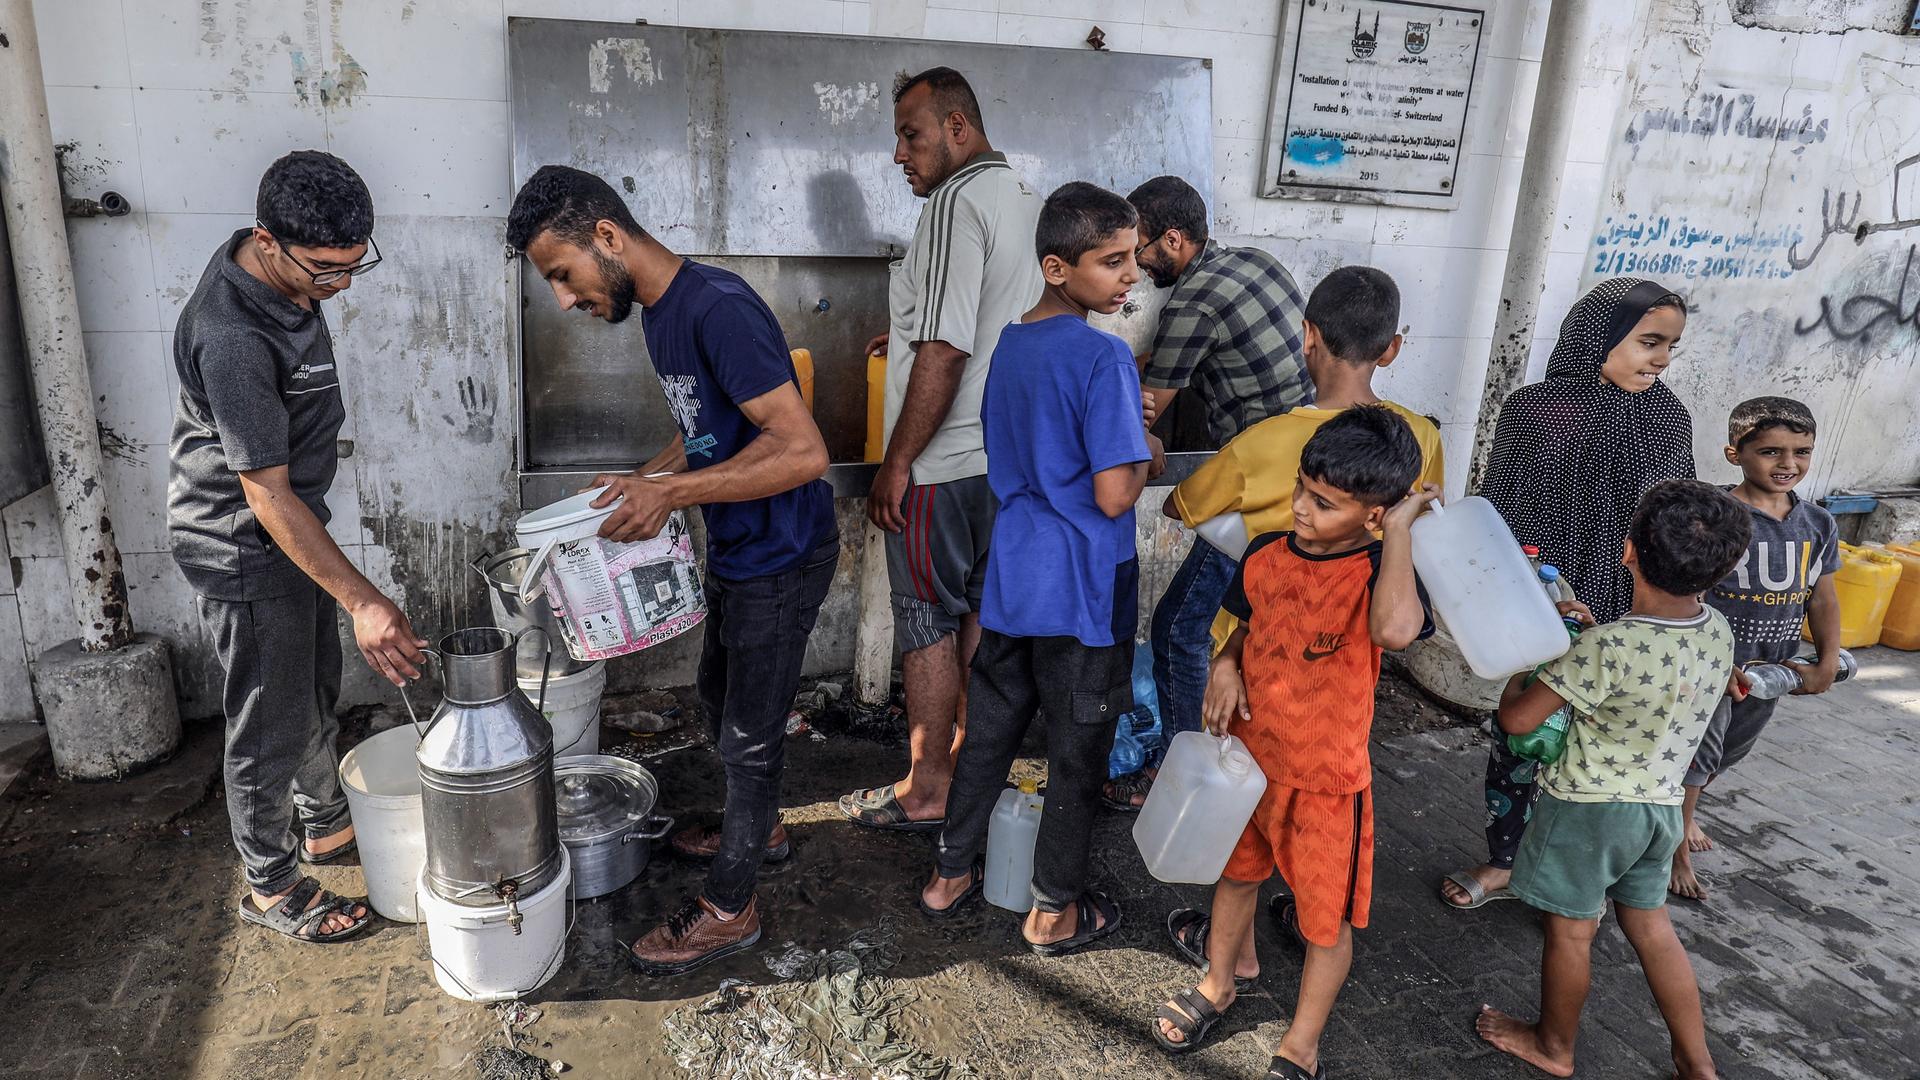 Palästinensische Gebiete, Khan Yunis: Palästinenser füllen Flaschen mit Trinkwasser aus einem Wasserhahn am Zentrum der Vereinten Nationen.